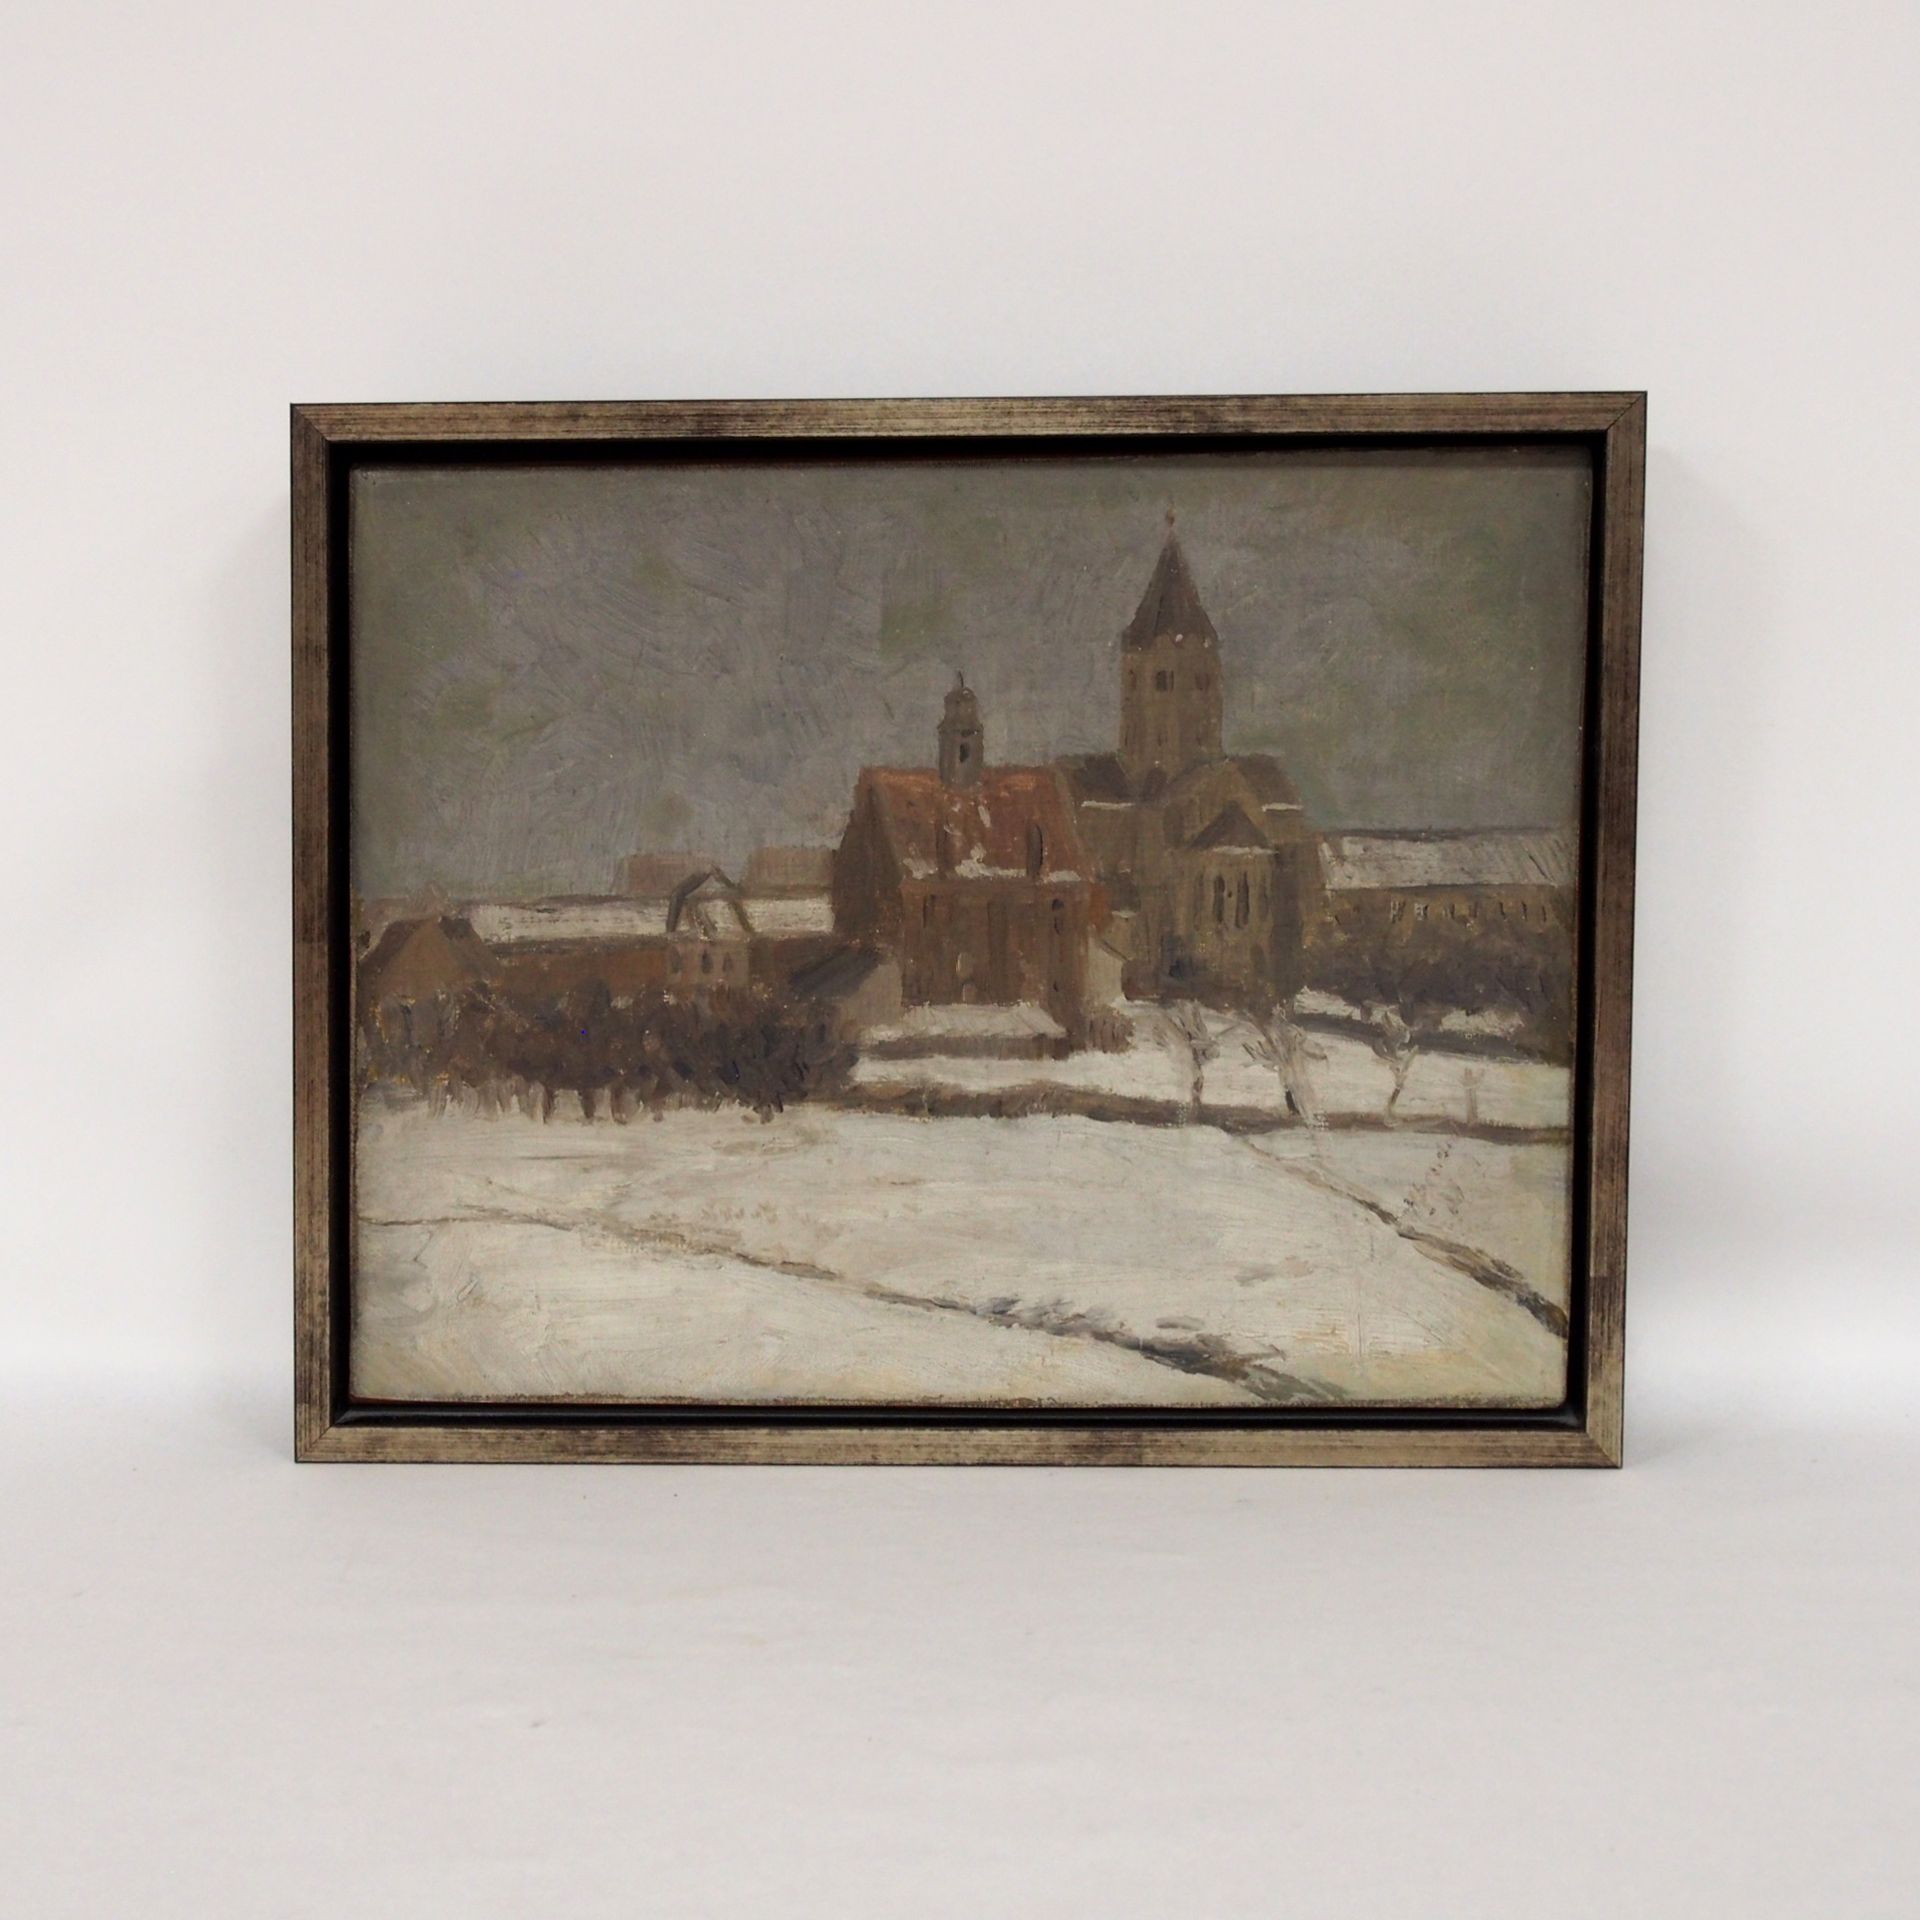 BENDRAT, Arthur: Blick auf die Kirche in Gerresheim im Winter